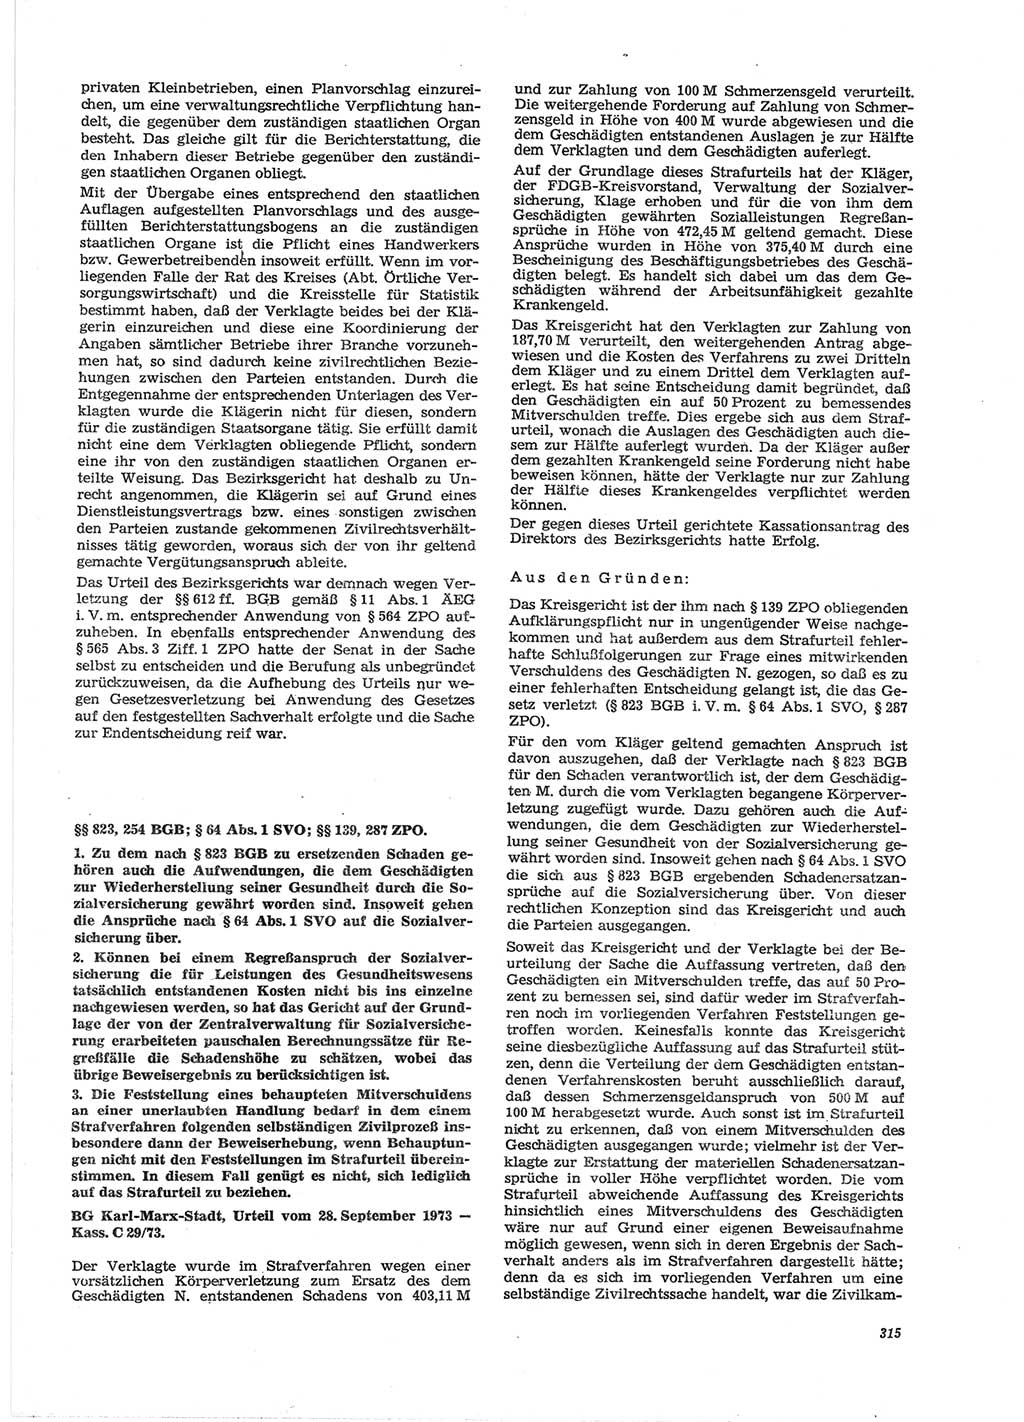 Neue Justiz (NJ), Zeitschrift für Recht und Rechtswissenschaft [Deutsche Demokratische Republik (DDR)], 28. Jahrgang 1974, Seite 315 (NJ DDR 1974, S. 315)